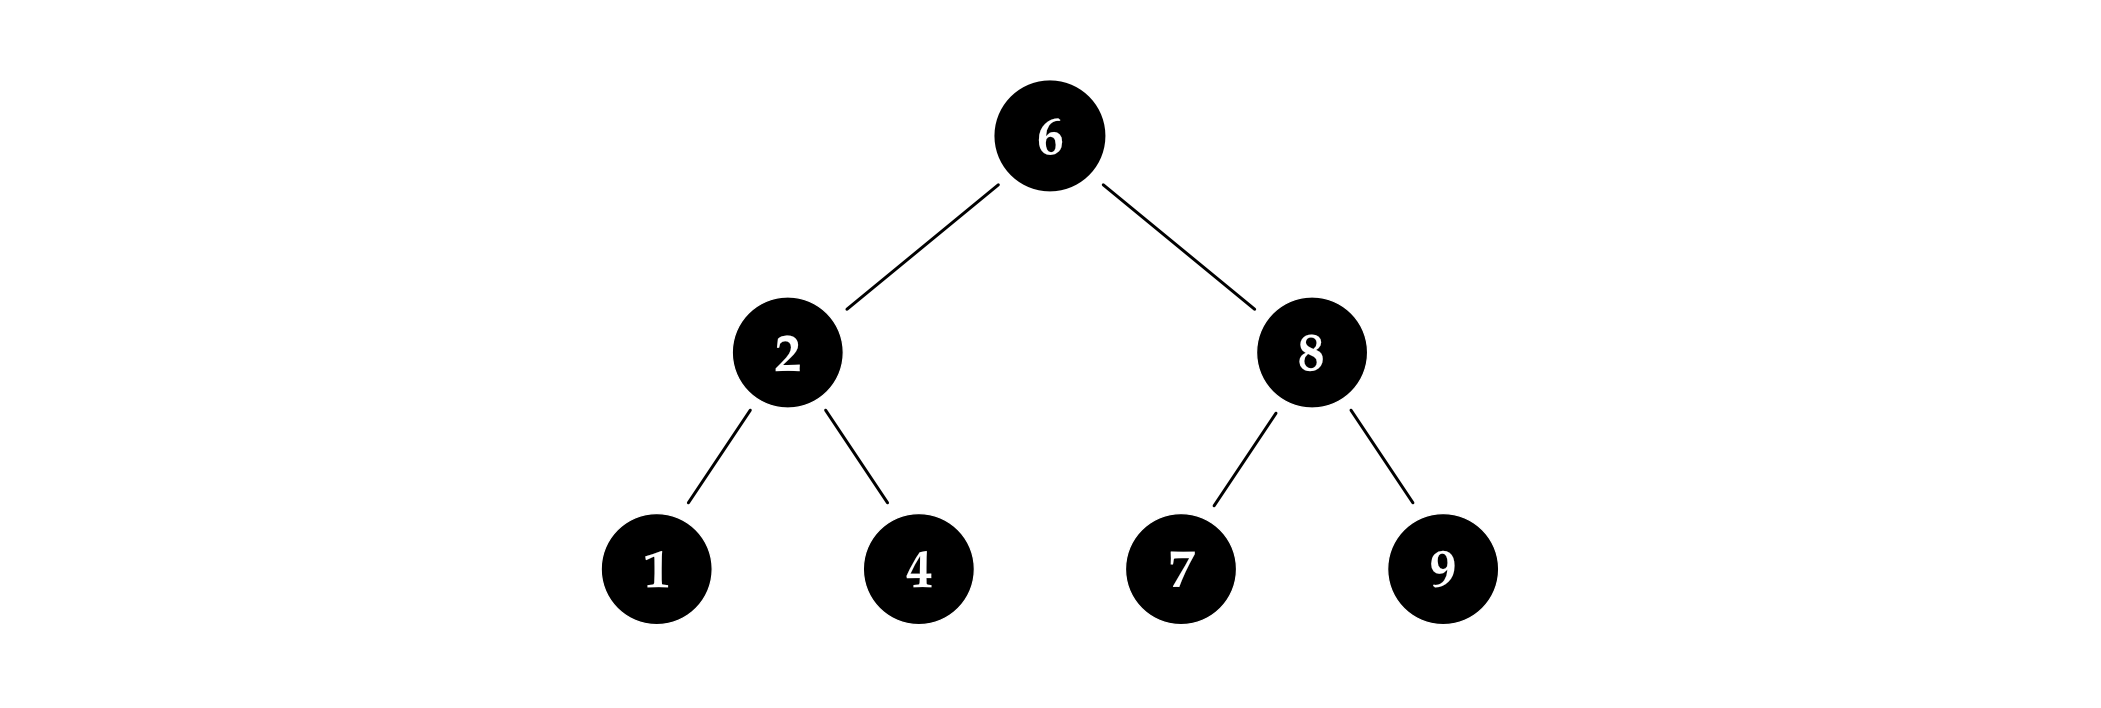 图 4.3: 每个节点都是黑色的示例红黑树。